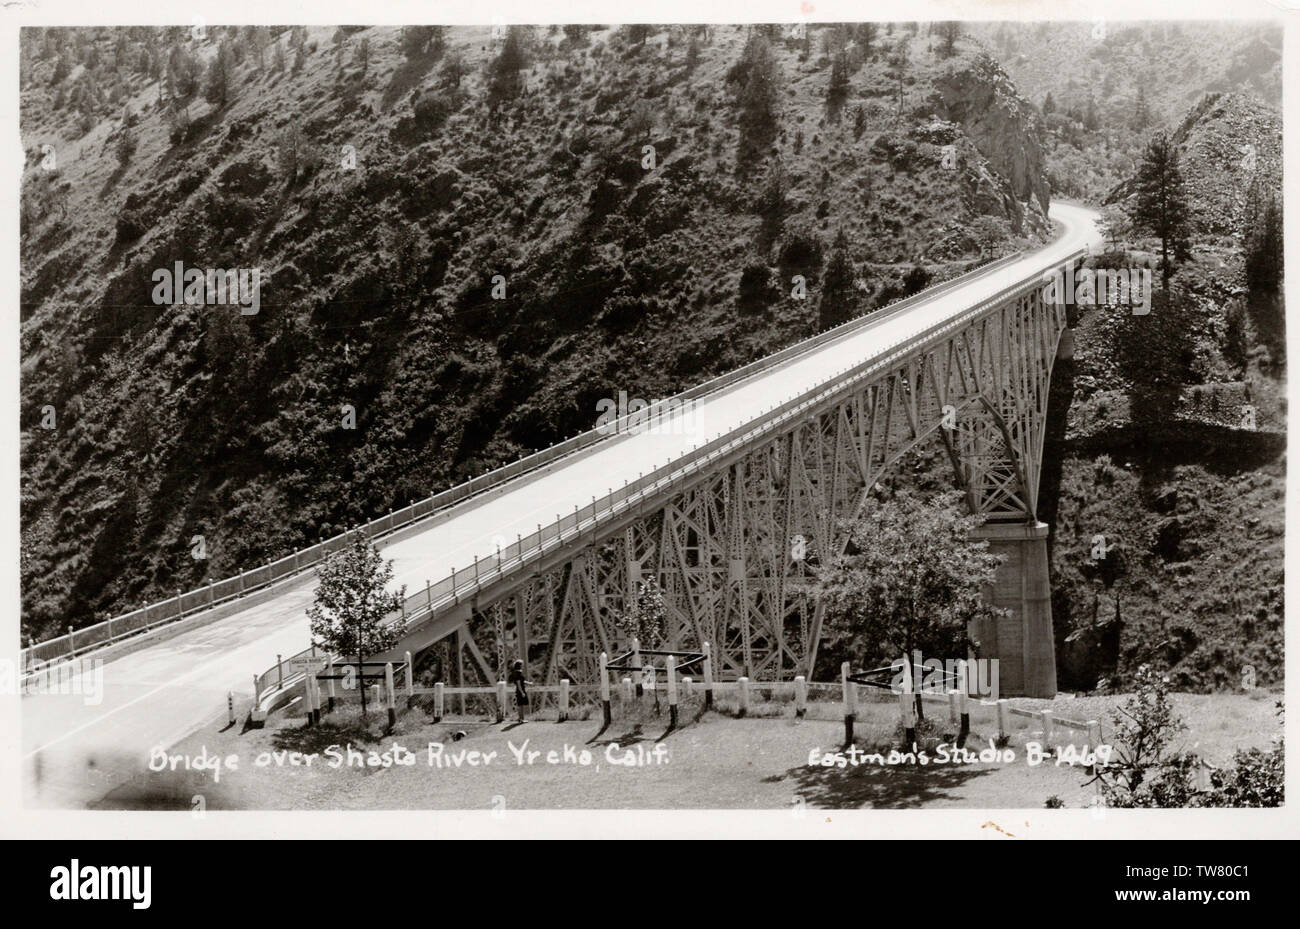 Pont sur la rivière de Shasta, Californie Yreka, vieille carte postale des années 1950. Banque D'Images